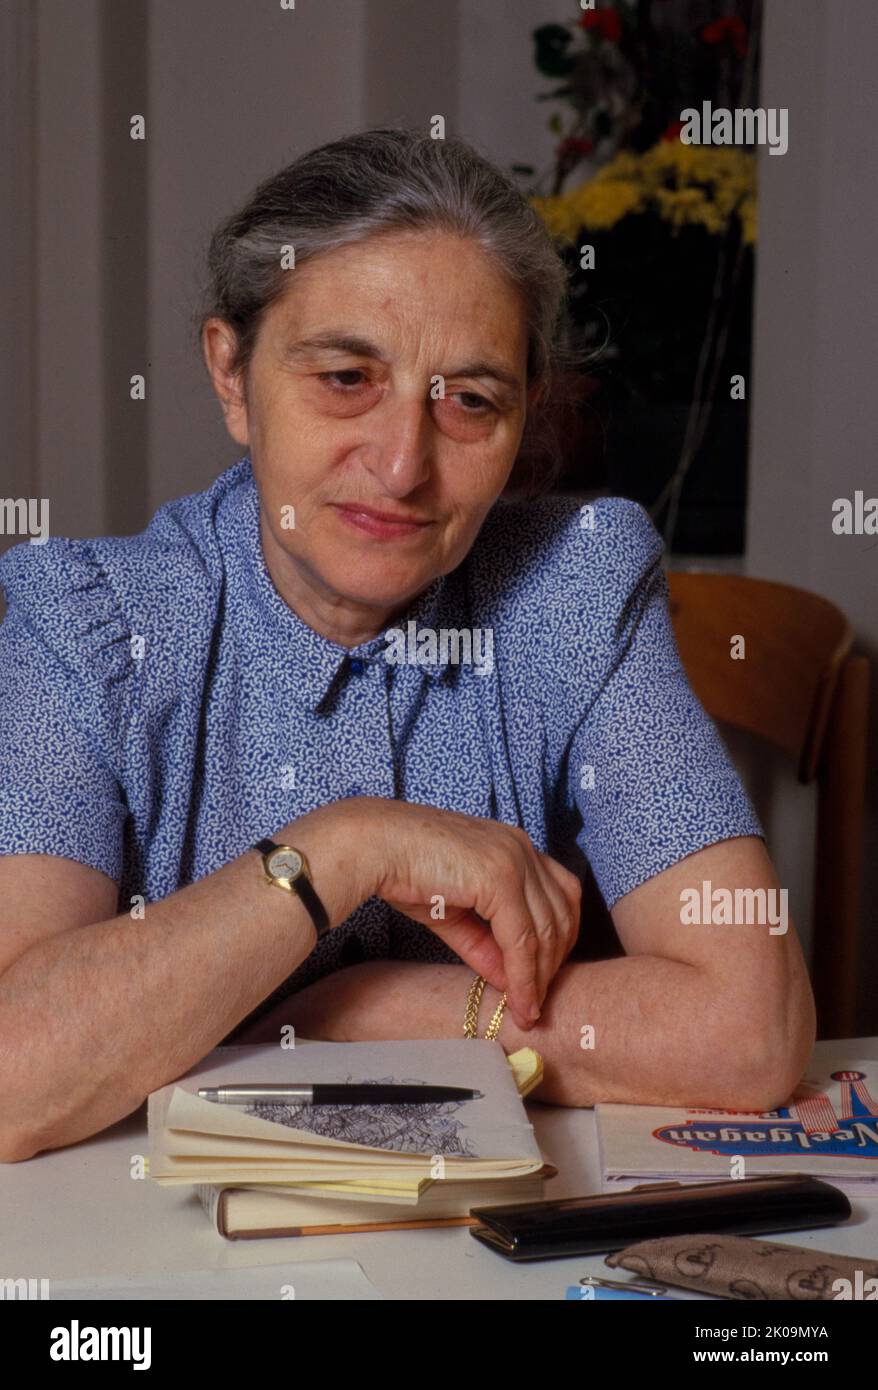 Ruth Prawer Jhabvala (1927 – 2013) è stato un romanziere, scrittore di storia breve e sceneggiatore vincitore del premio Academy Award. È forse più conosciuta per la sua lunga collaborazione con Merchant Ivory Productions, composta dal regista James Ivory e dal produttore Ismail Merchan. Foto Stock